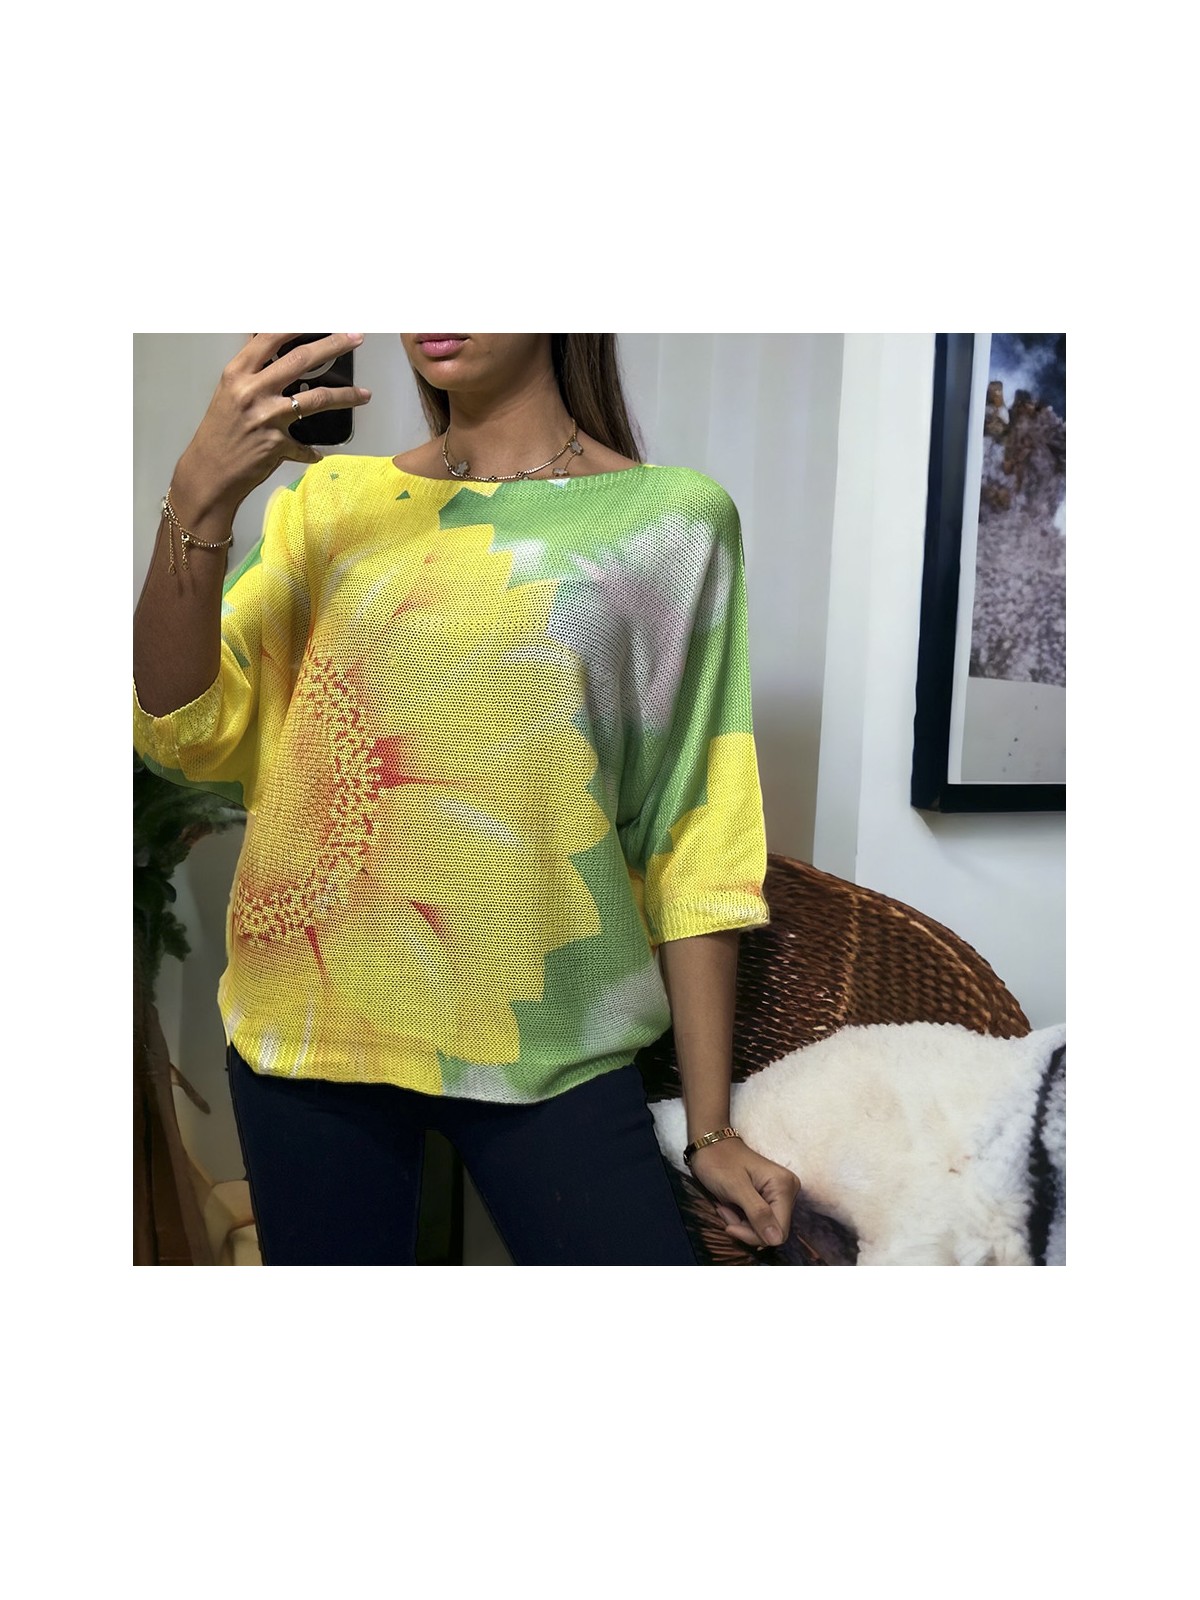 Haut over size manche chauve souris vert motif fleur en maille tricot - 3